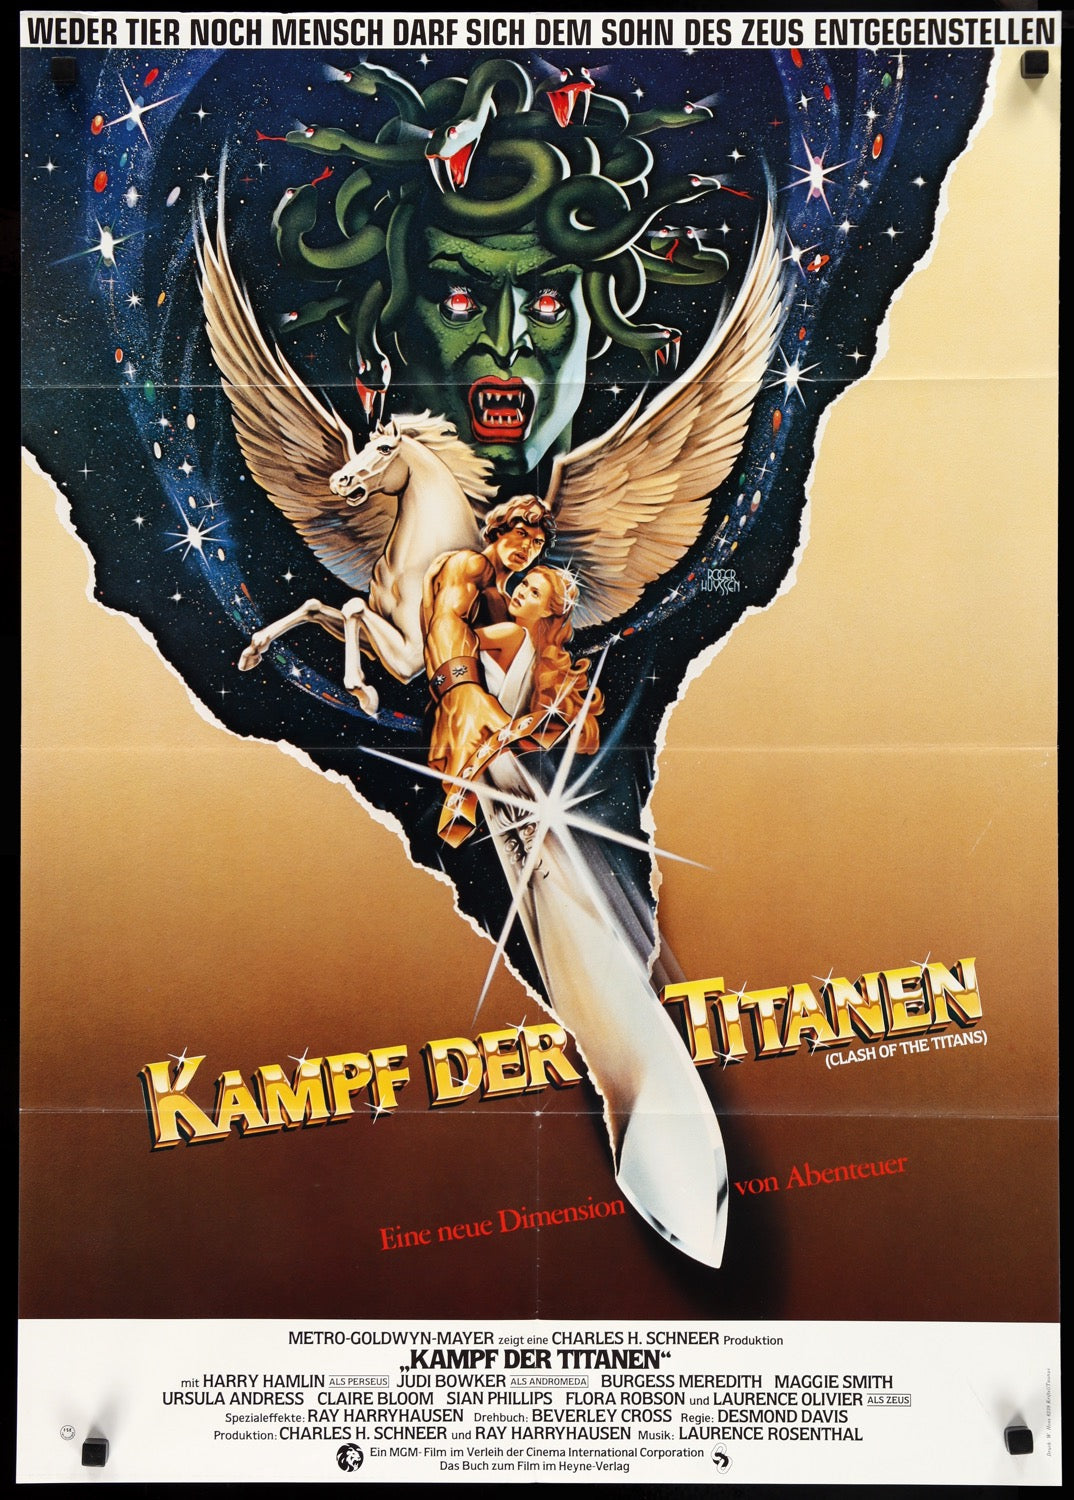 Clash of the Titans (1981) original movie poster for sale at Original Film Art